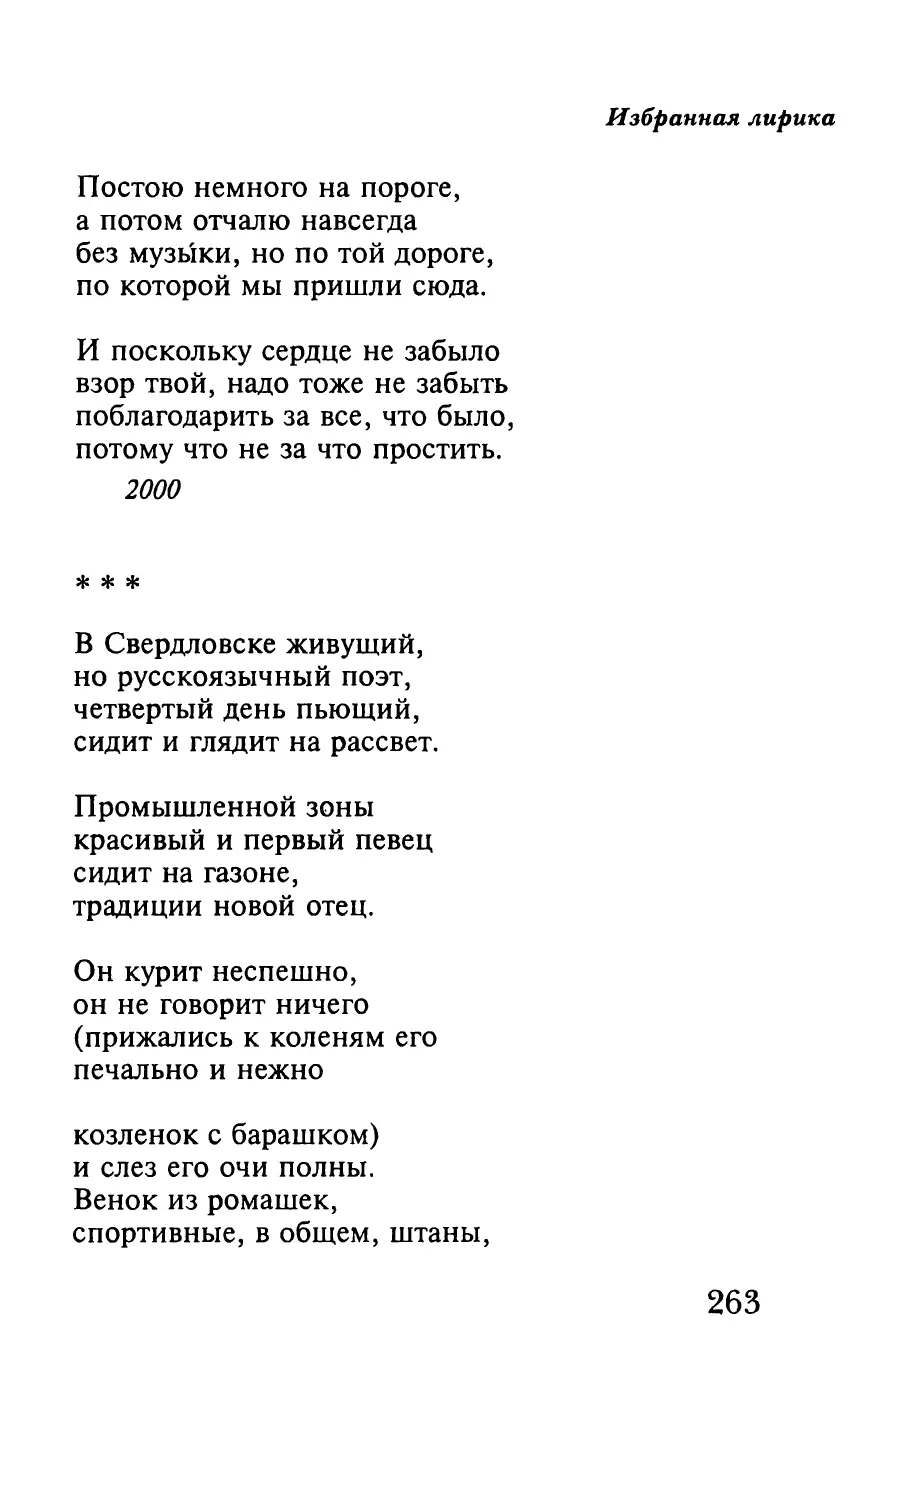 «В Свердловске живущий, но русскоязычный поэт...»